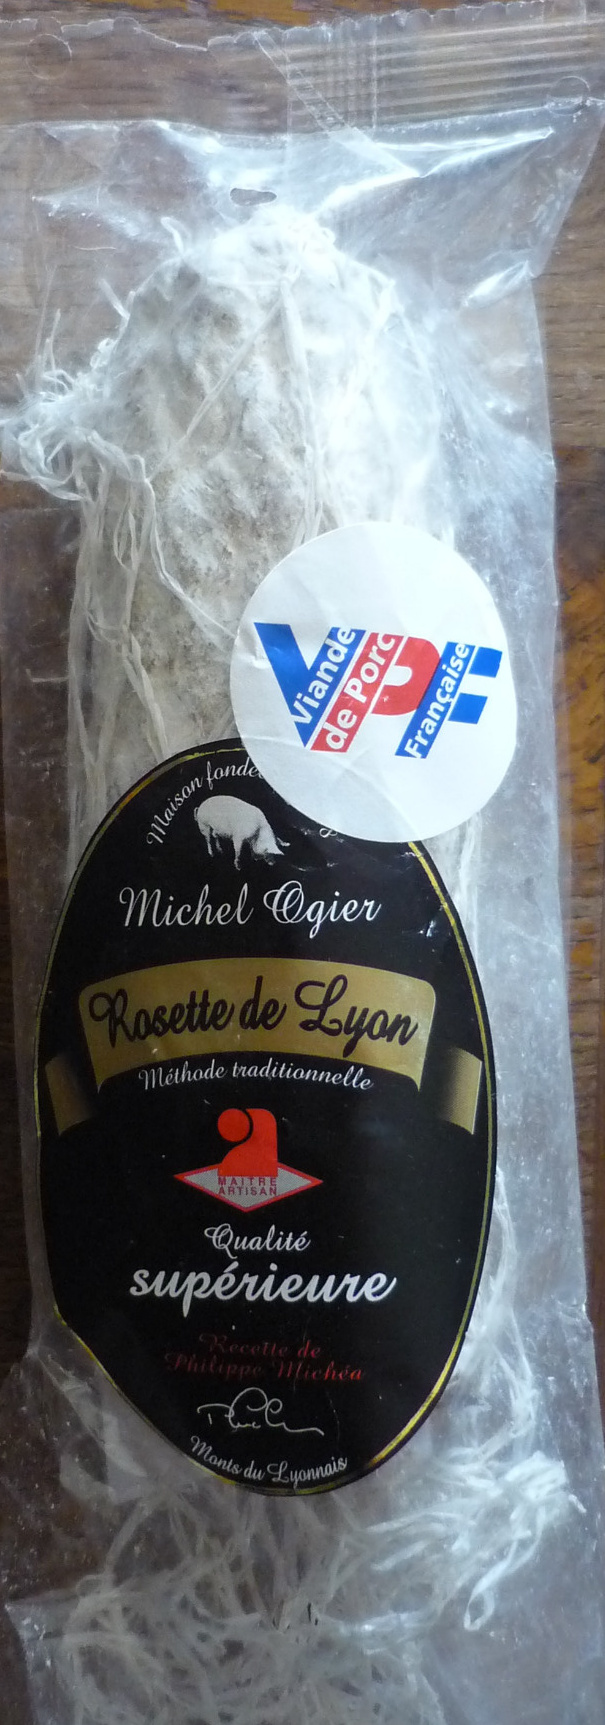 Rosette de Lyon - Product - fr